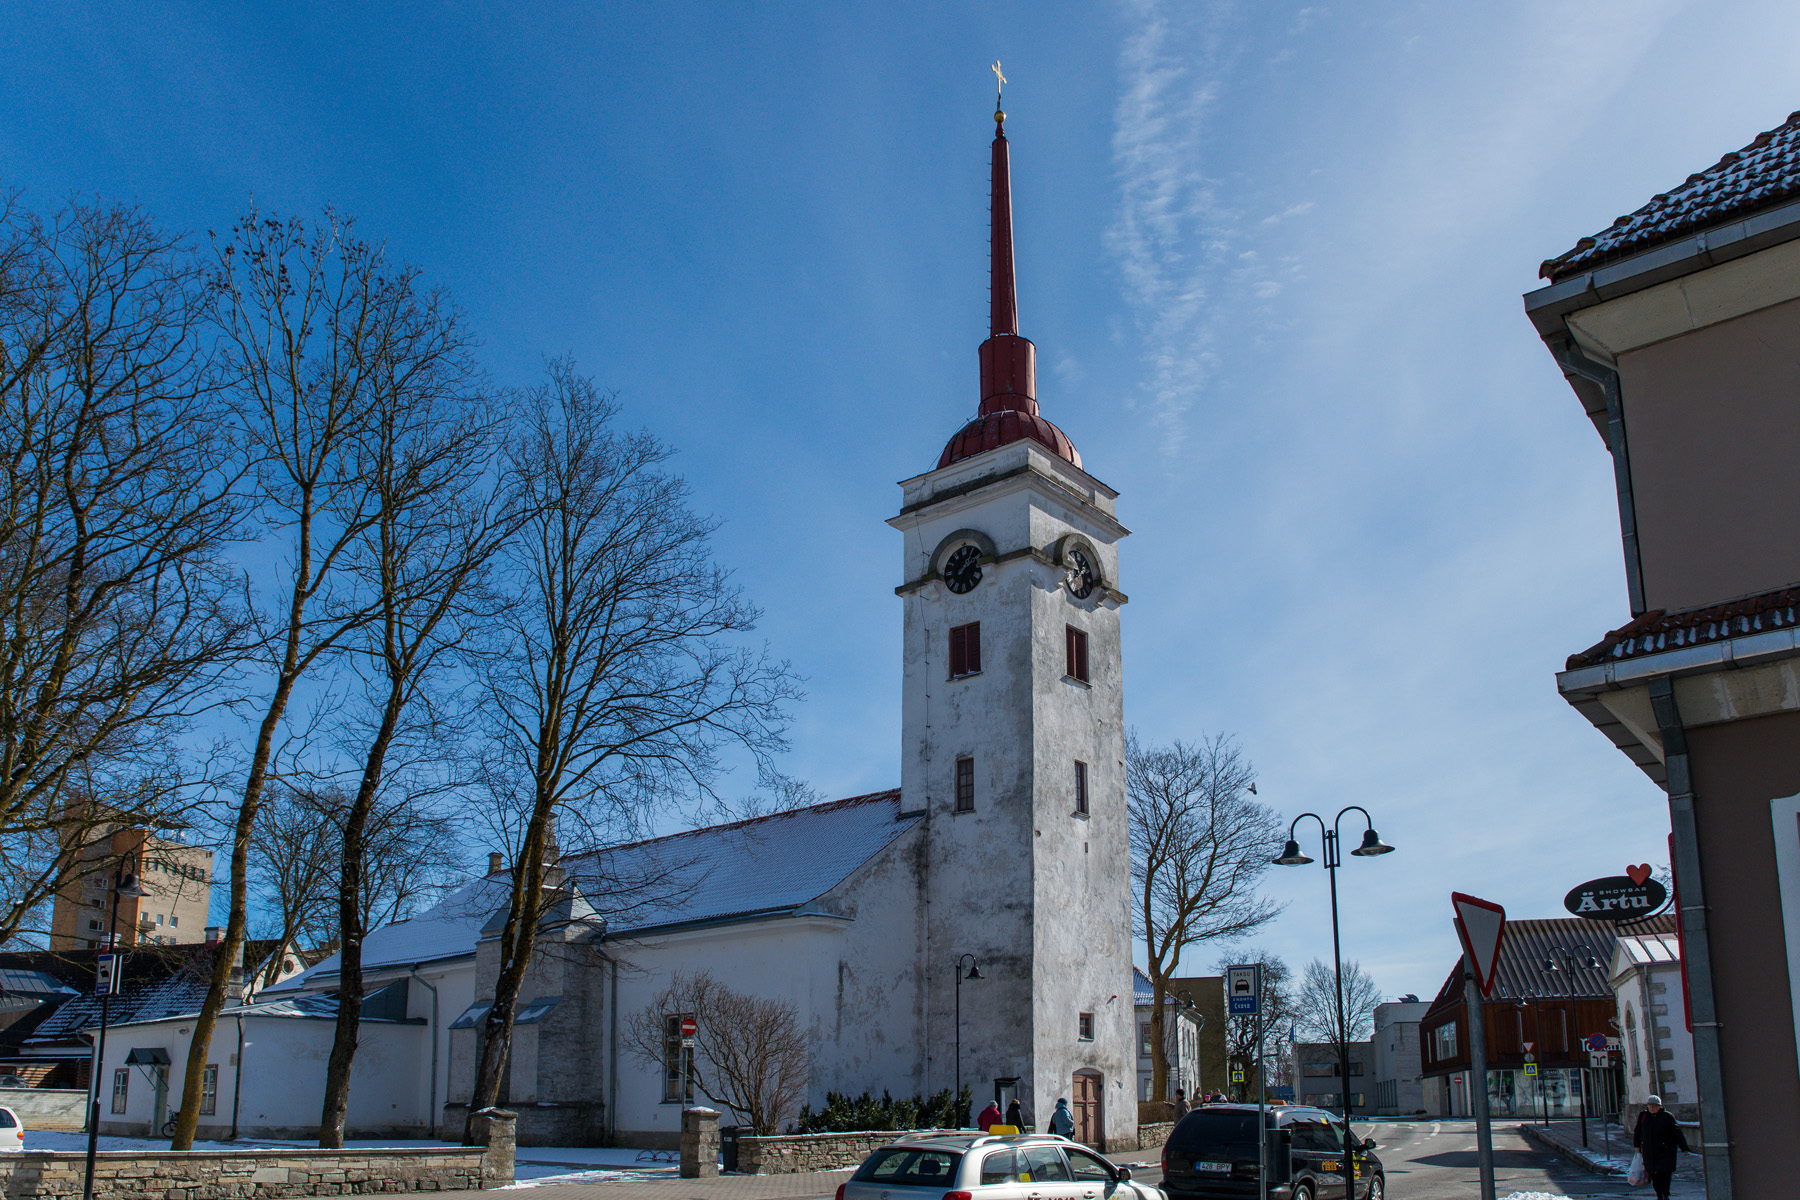 20160320-Saaremaa-623-Kuressaare-Laurentsiuse.jpg - 18.-20. märts 2016. Saaremaa ringreis. Kuressaare Laurentsiuse kirik